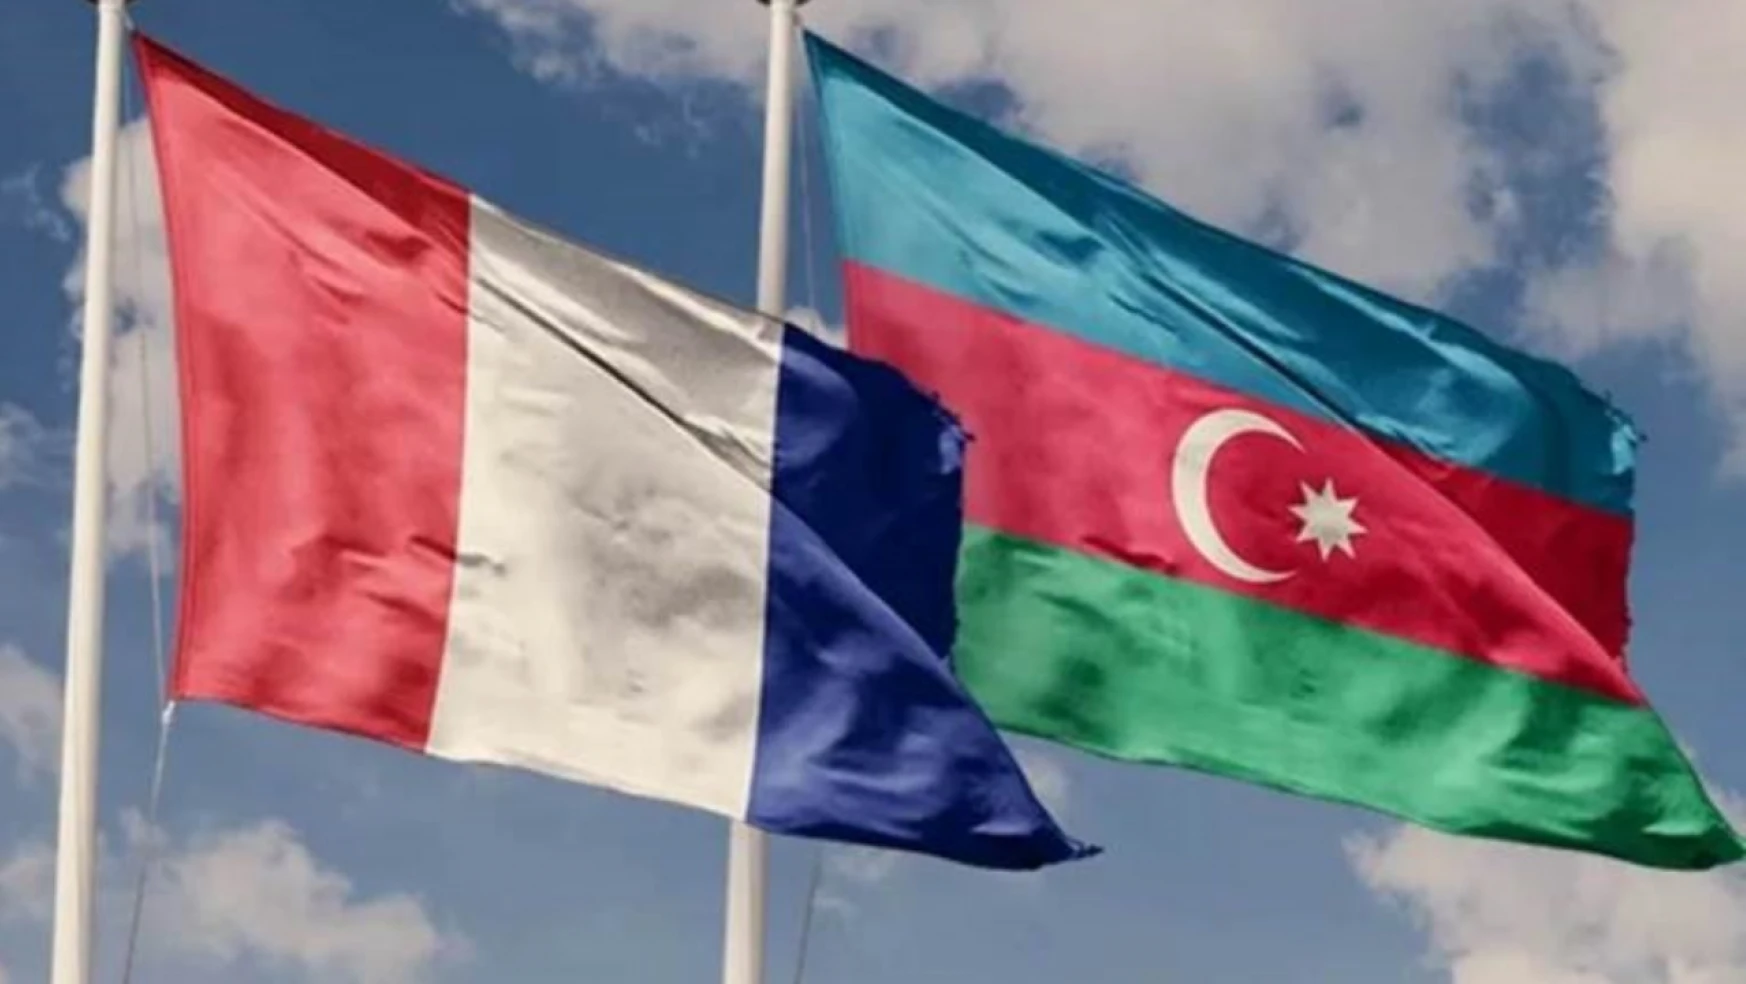 Fransa, Azerbaycan'daki büyükelçisini geri çağırdı